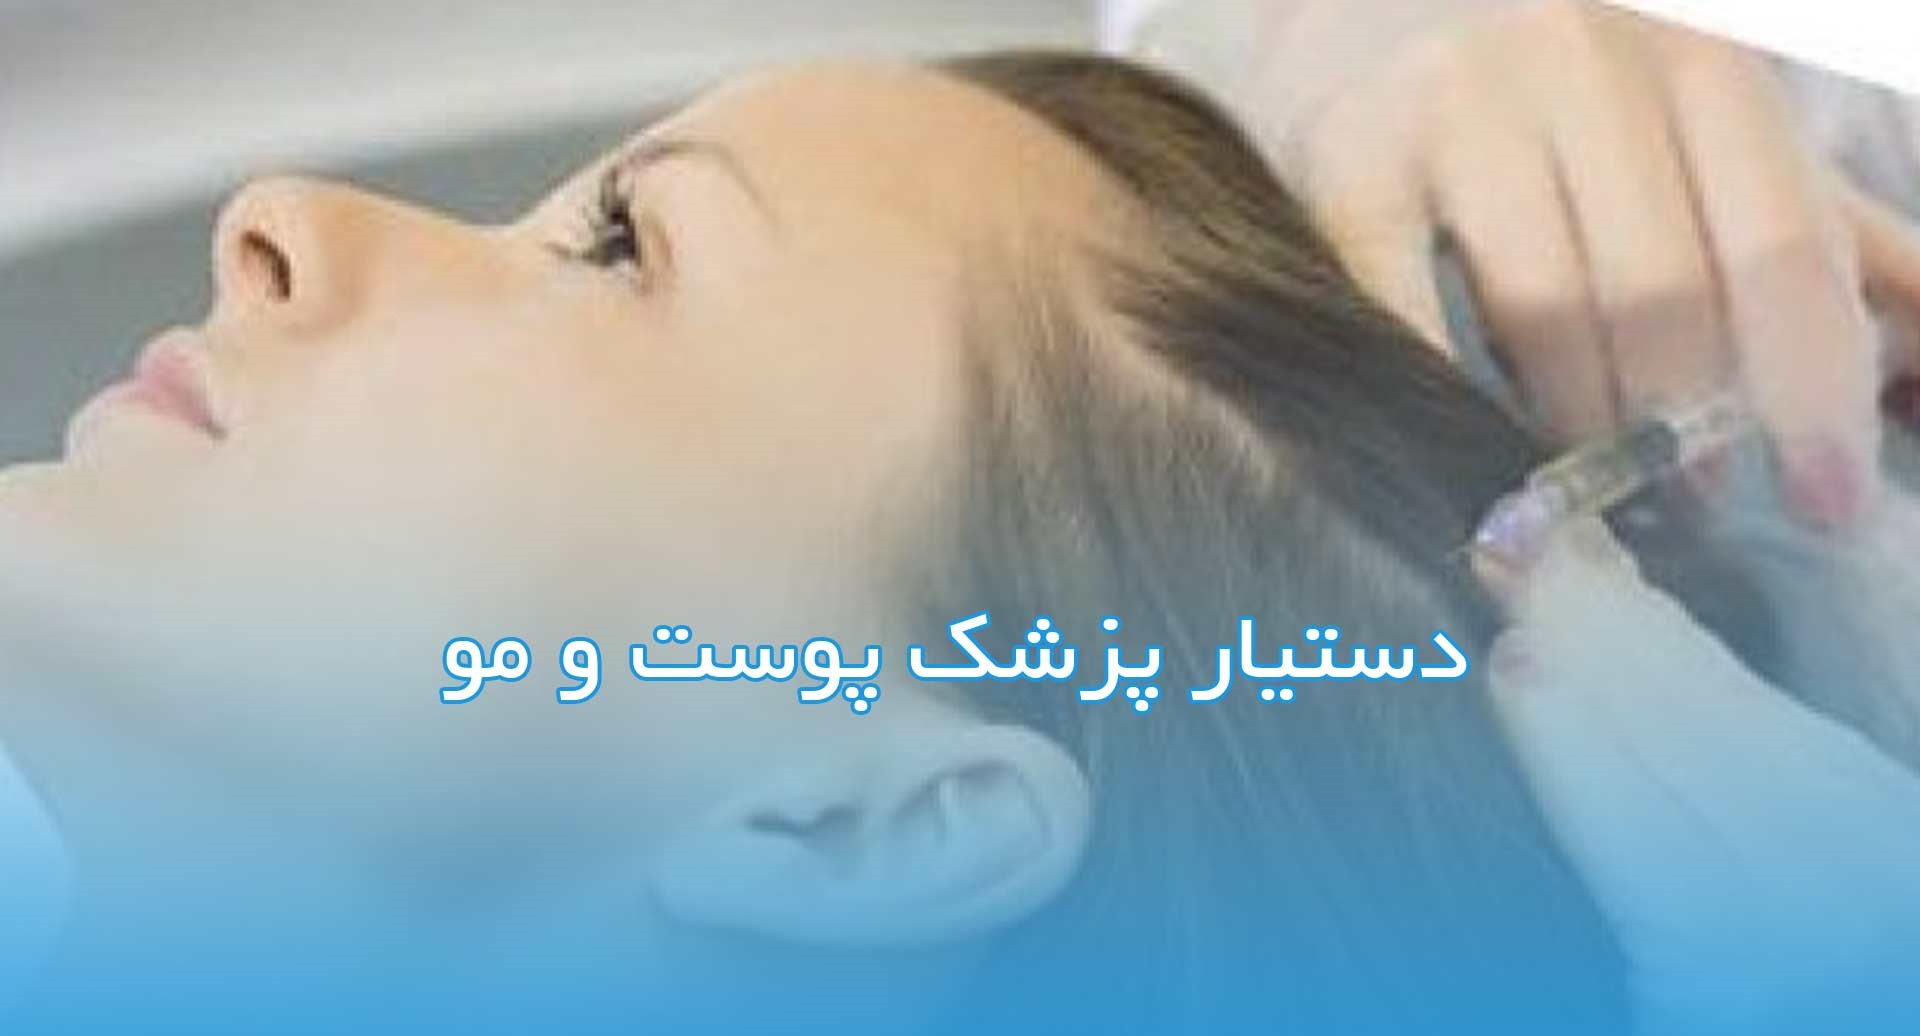 جزوه دستیار متخصص پوست و مو مطابق سرفصل های جهاد دانشگاهی دانشگاه علوم پزشکی شهید بهشتی